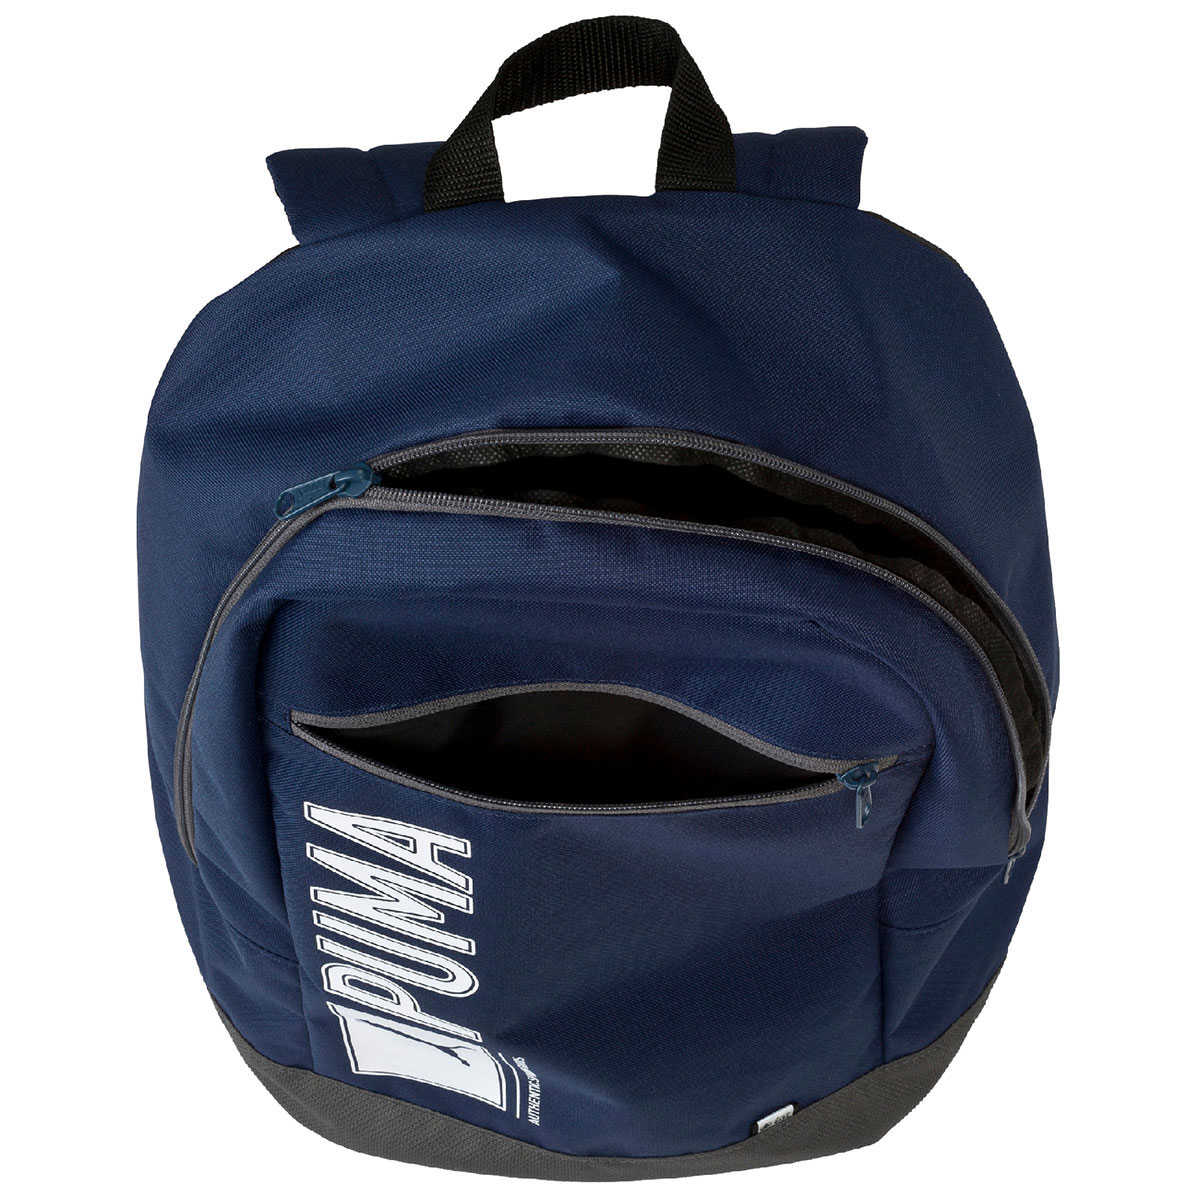 Pioneer backpack là mẫu balo laptop được chia làm 2 ngăn đựng đồ riêng biệt